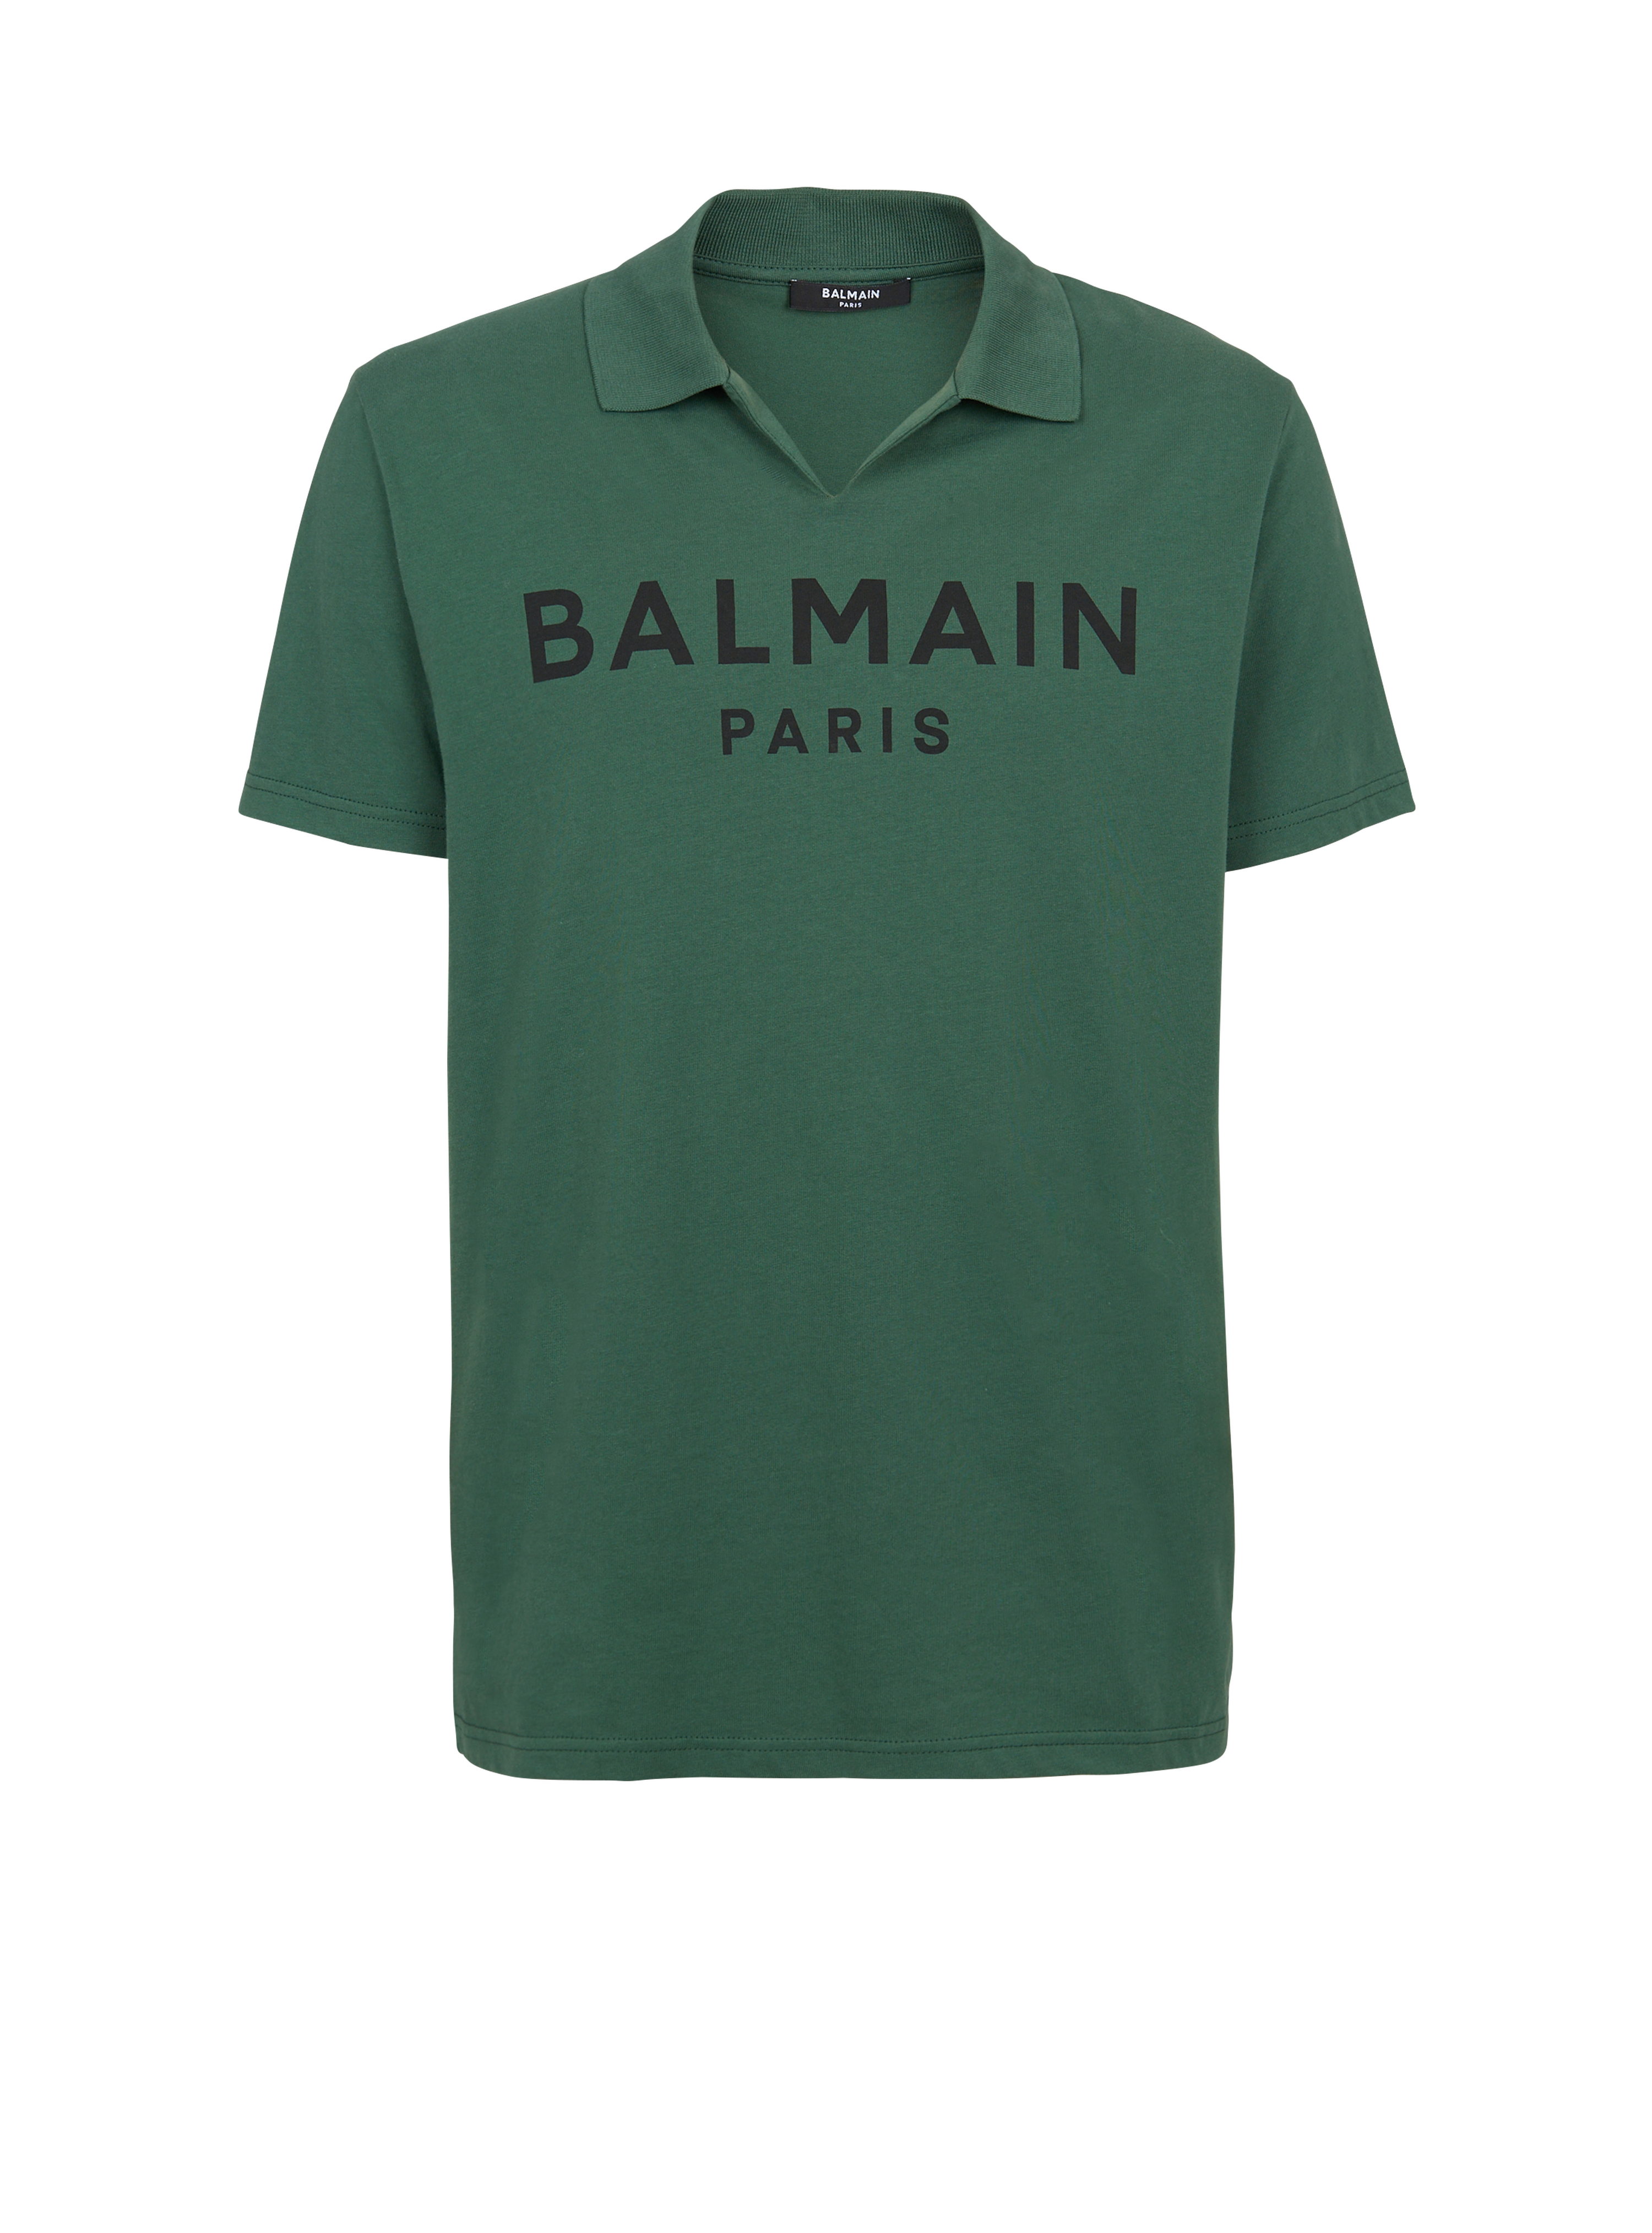 Cotton polo with black Balmain logo print, green